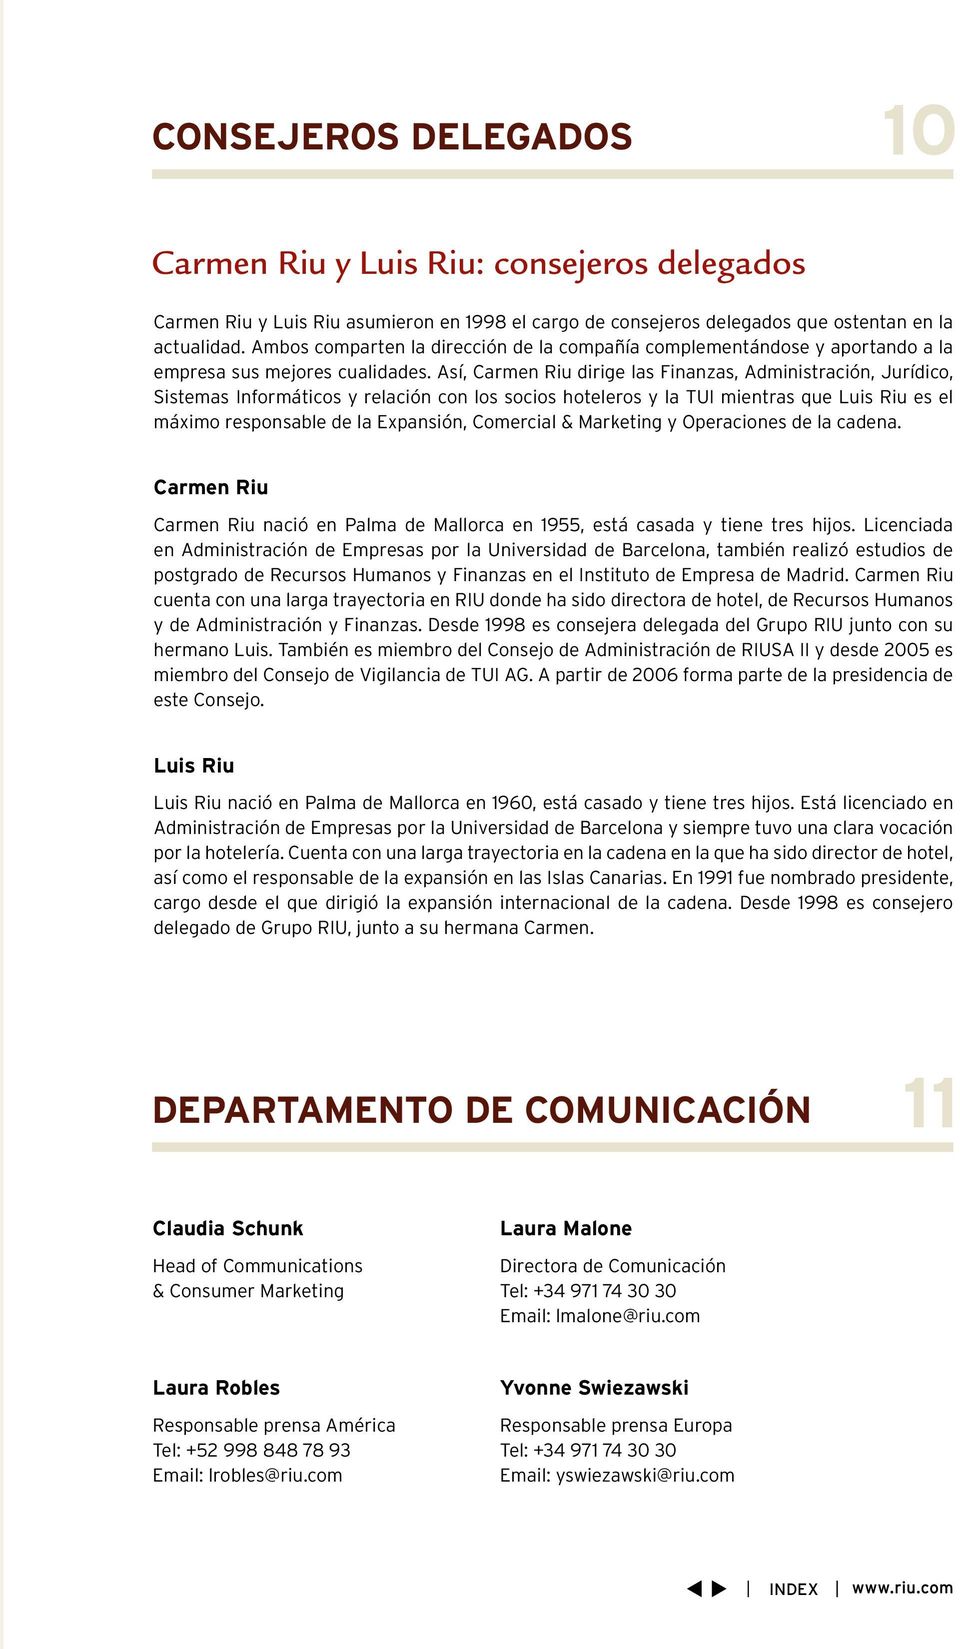 Así, Carmen Riu dirige las Finanzas, Administración, Jurídico, Sistemas Informáticos y relación con los socios hoteleros y la TUI mientras que Luis Riu es el máximo responsable de la Expansión,